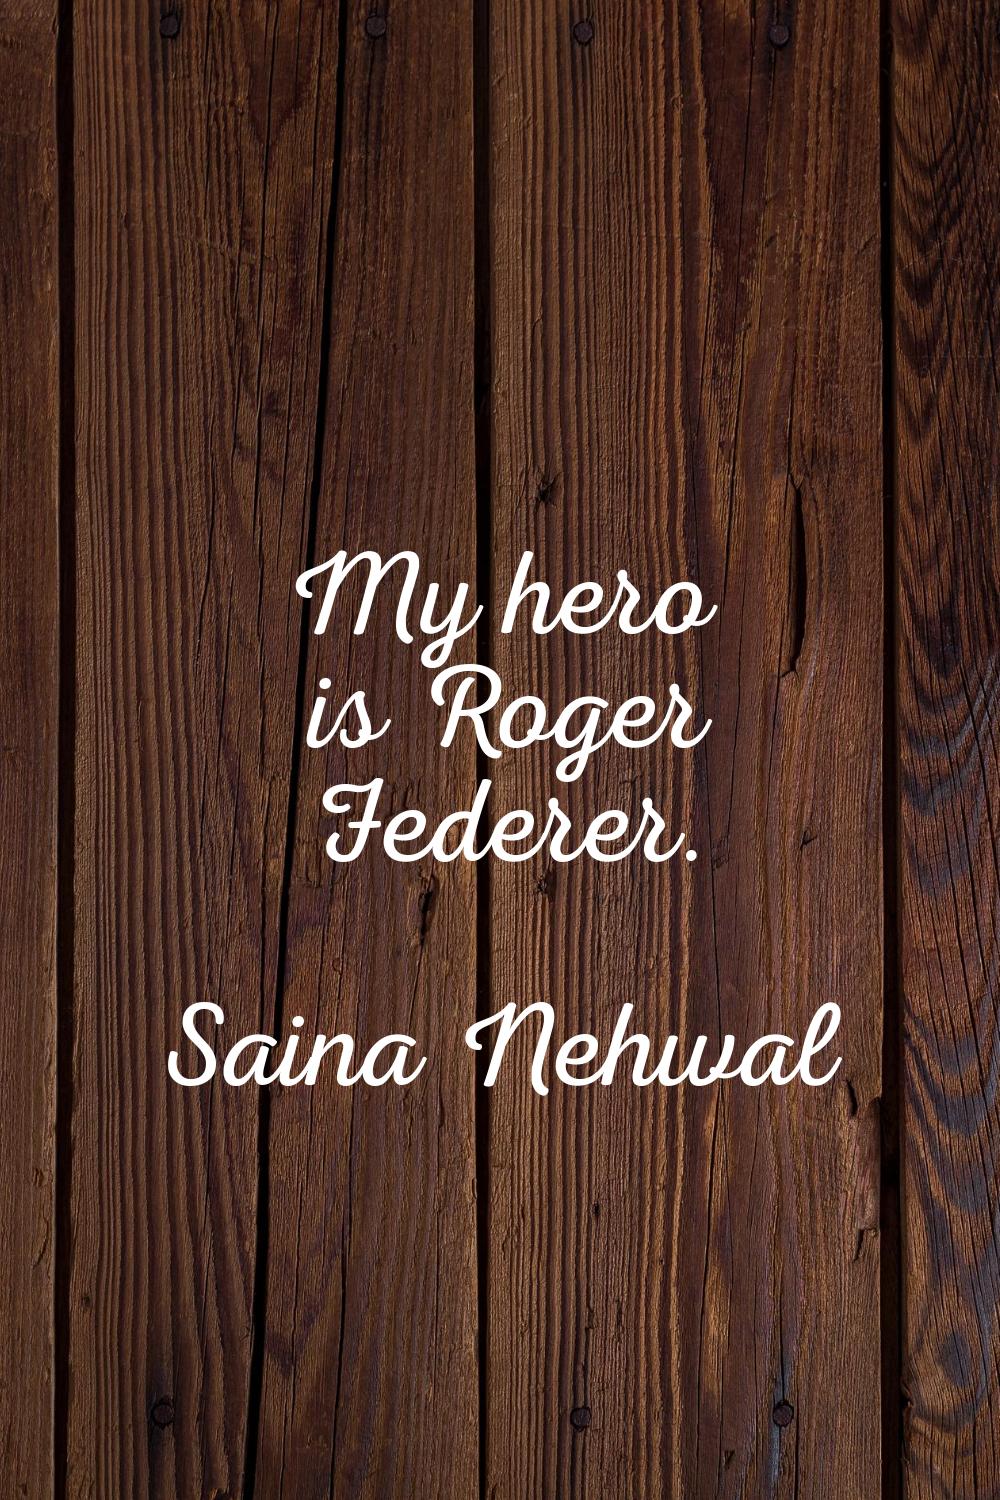 My hero is Roger Federer.